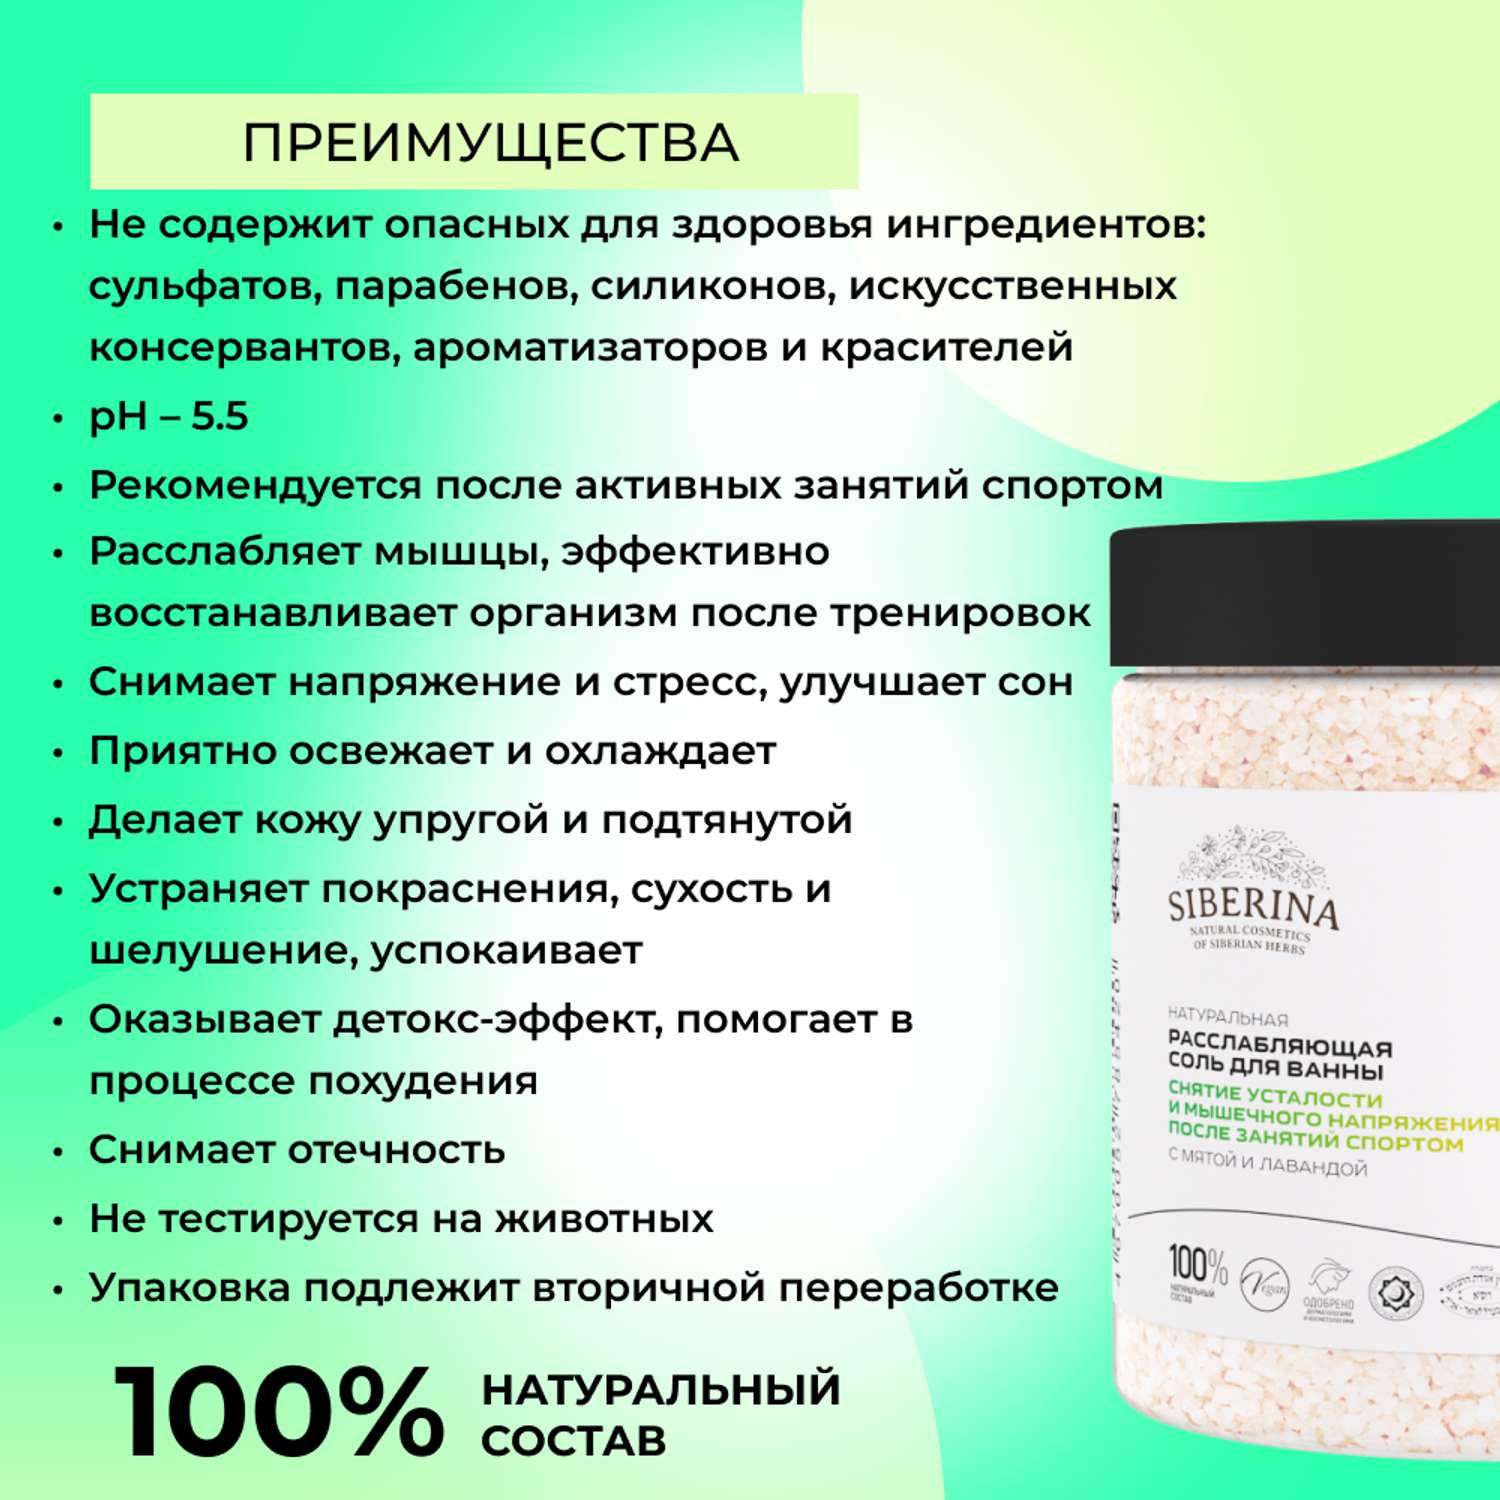 Соль для ванны Siberina натуральная «Снятие усталости и мышечного напряжения» морская расслабляющая 600 г - фото 3